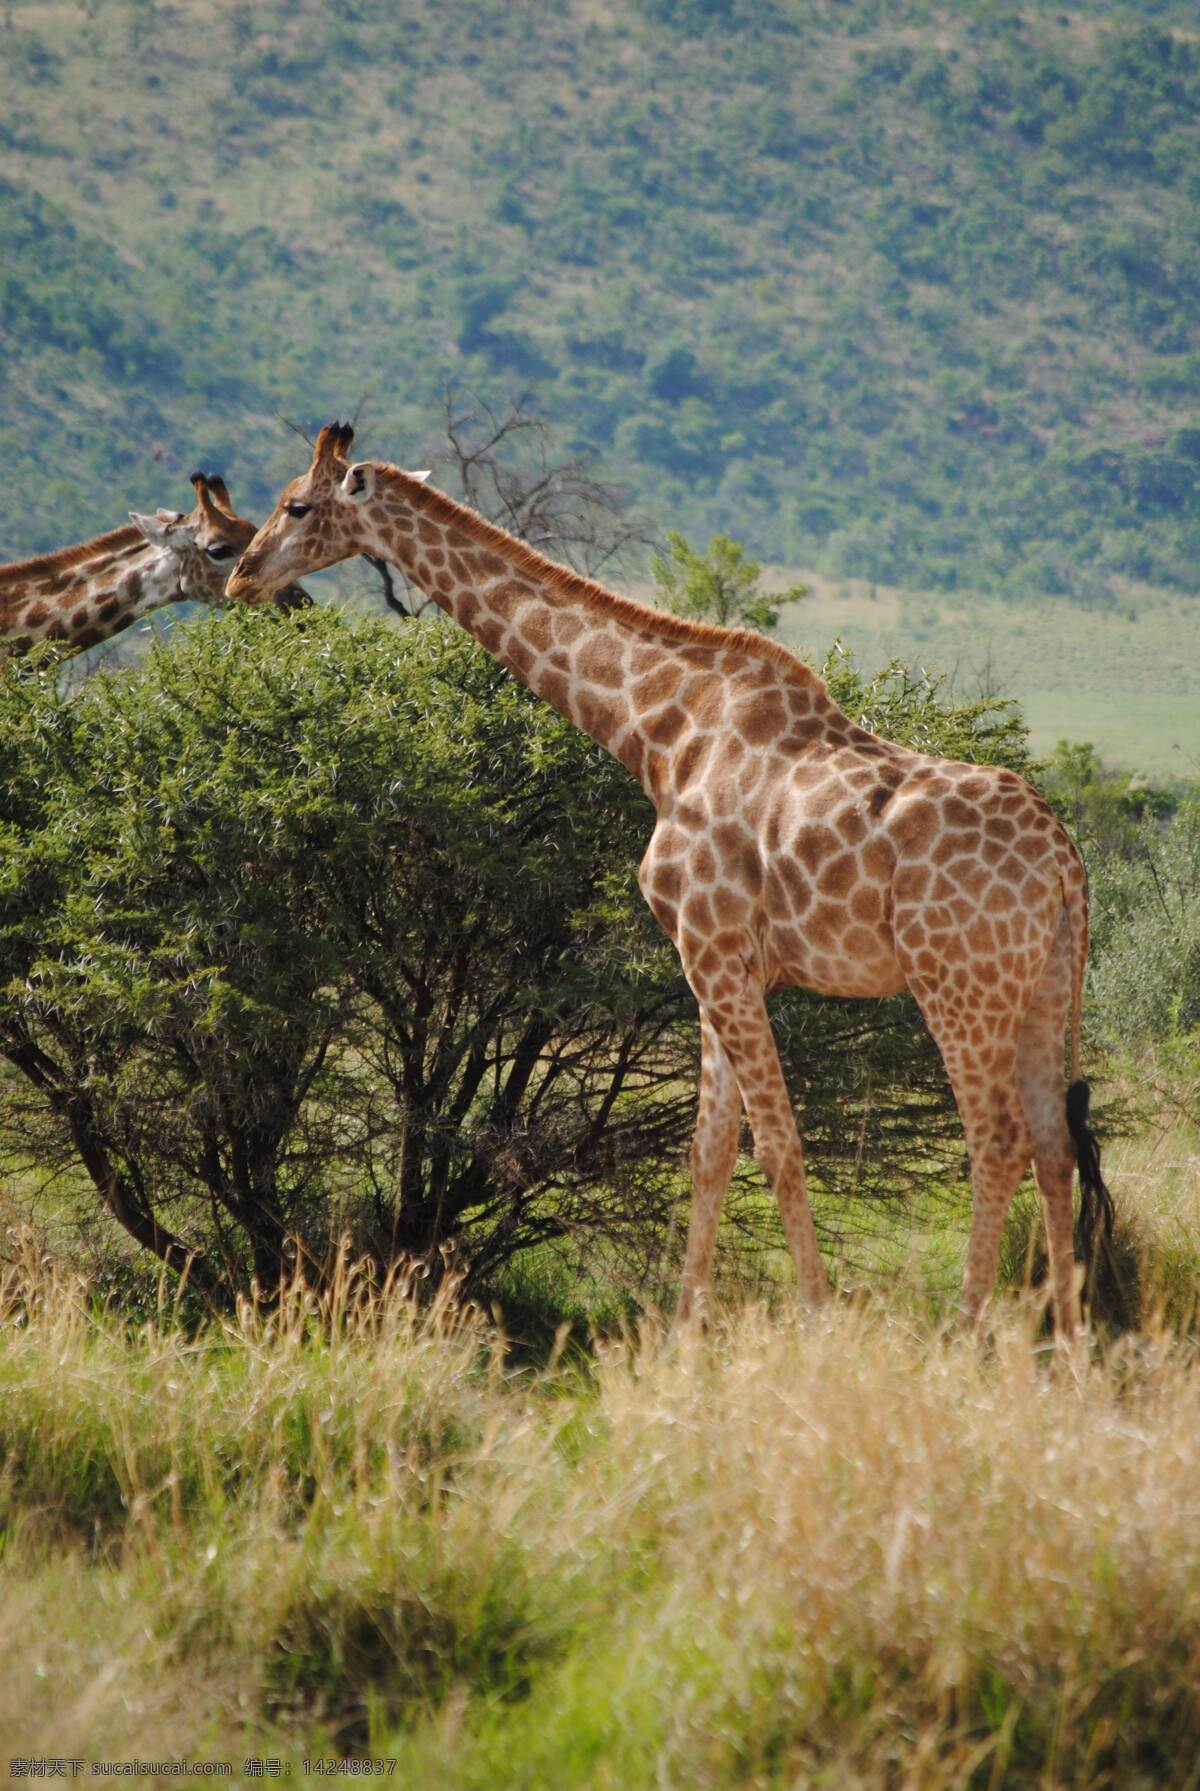 长颈鹿图片 长颈鹿 长颈鹿群 夕阳 漫步 迁徙 野外 嬉戏 跋涉 动物 生物世界 野生动物